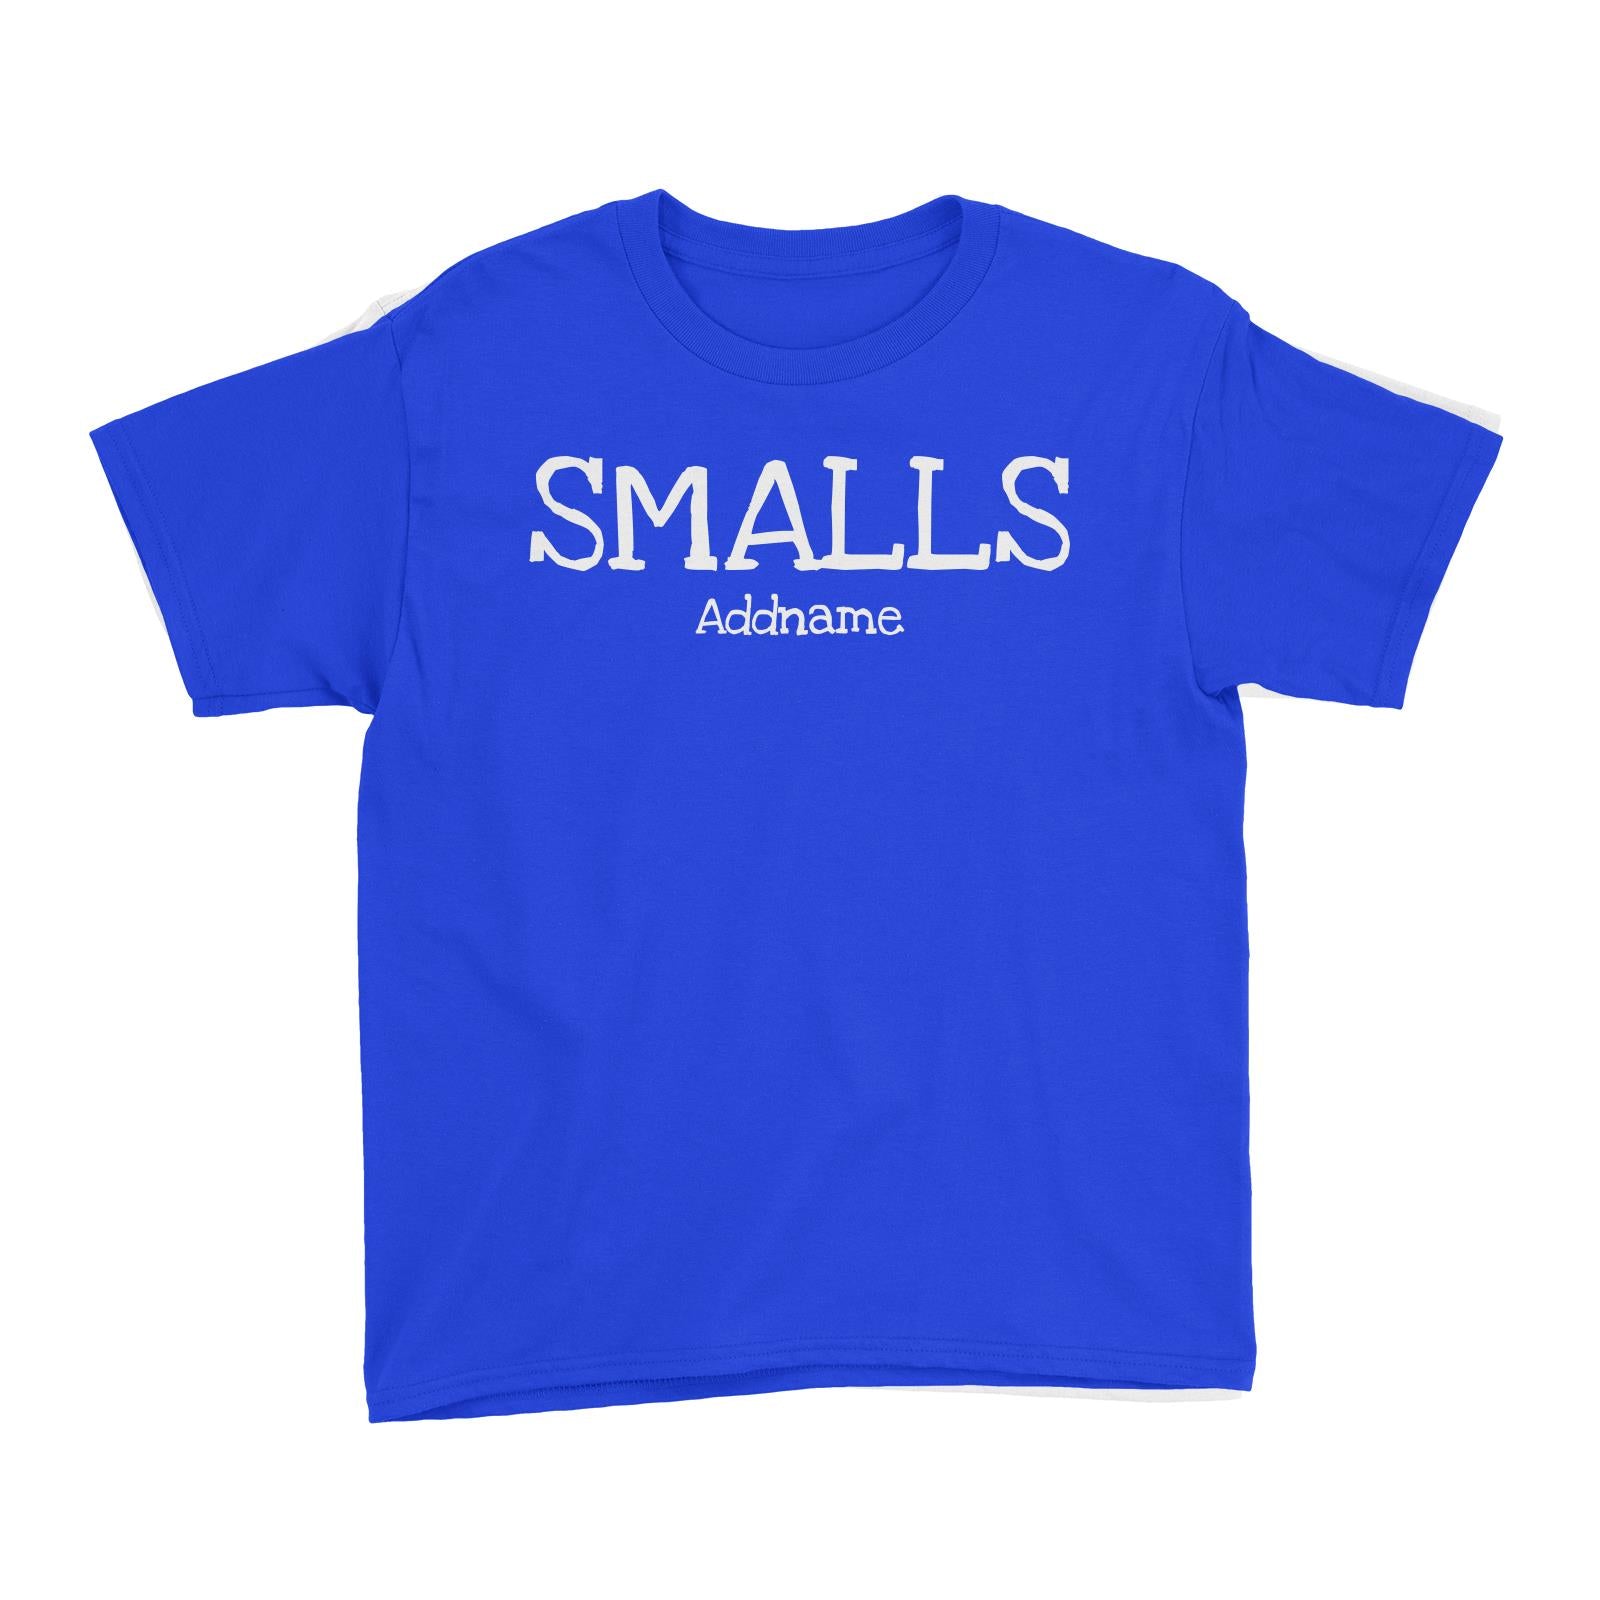 Smalls Kid's T-Shirt